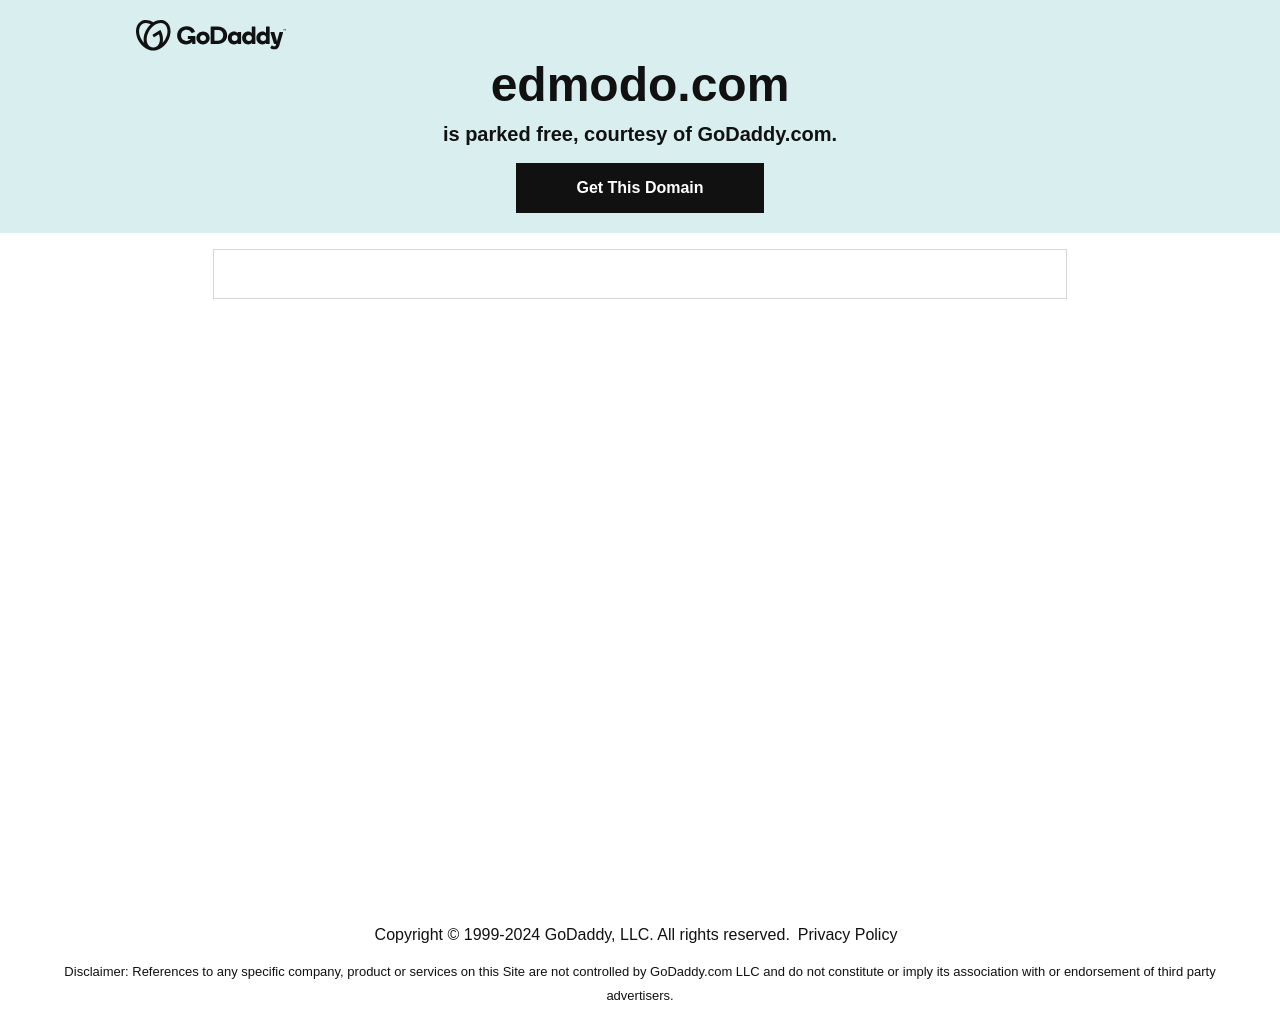 edmodo.com